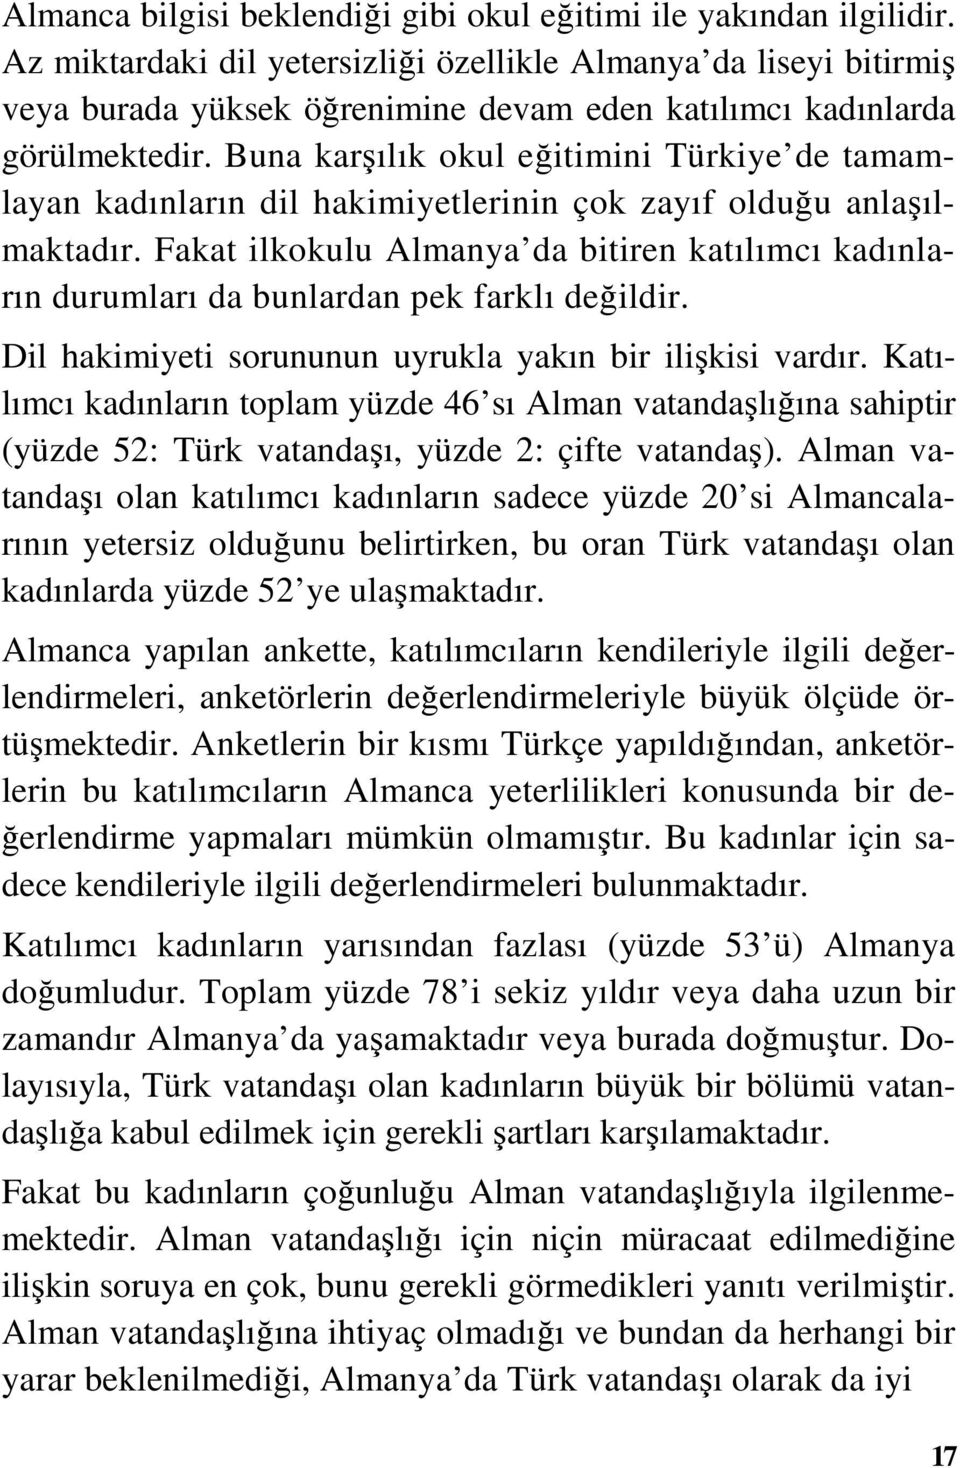 Buna karşılık okul eğitimini Türkiye de tamamlayan kadınların dil hakimiyetlerinin çok zayıf olduğu anlaşılmaktadır.